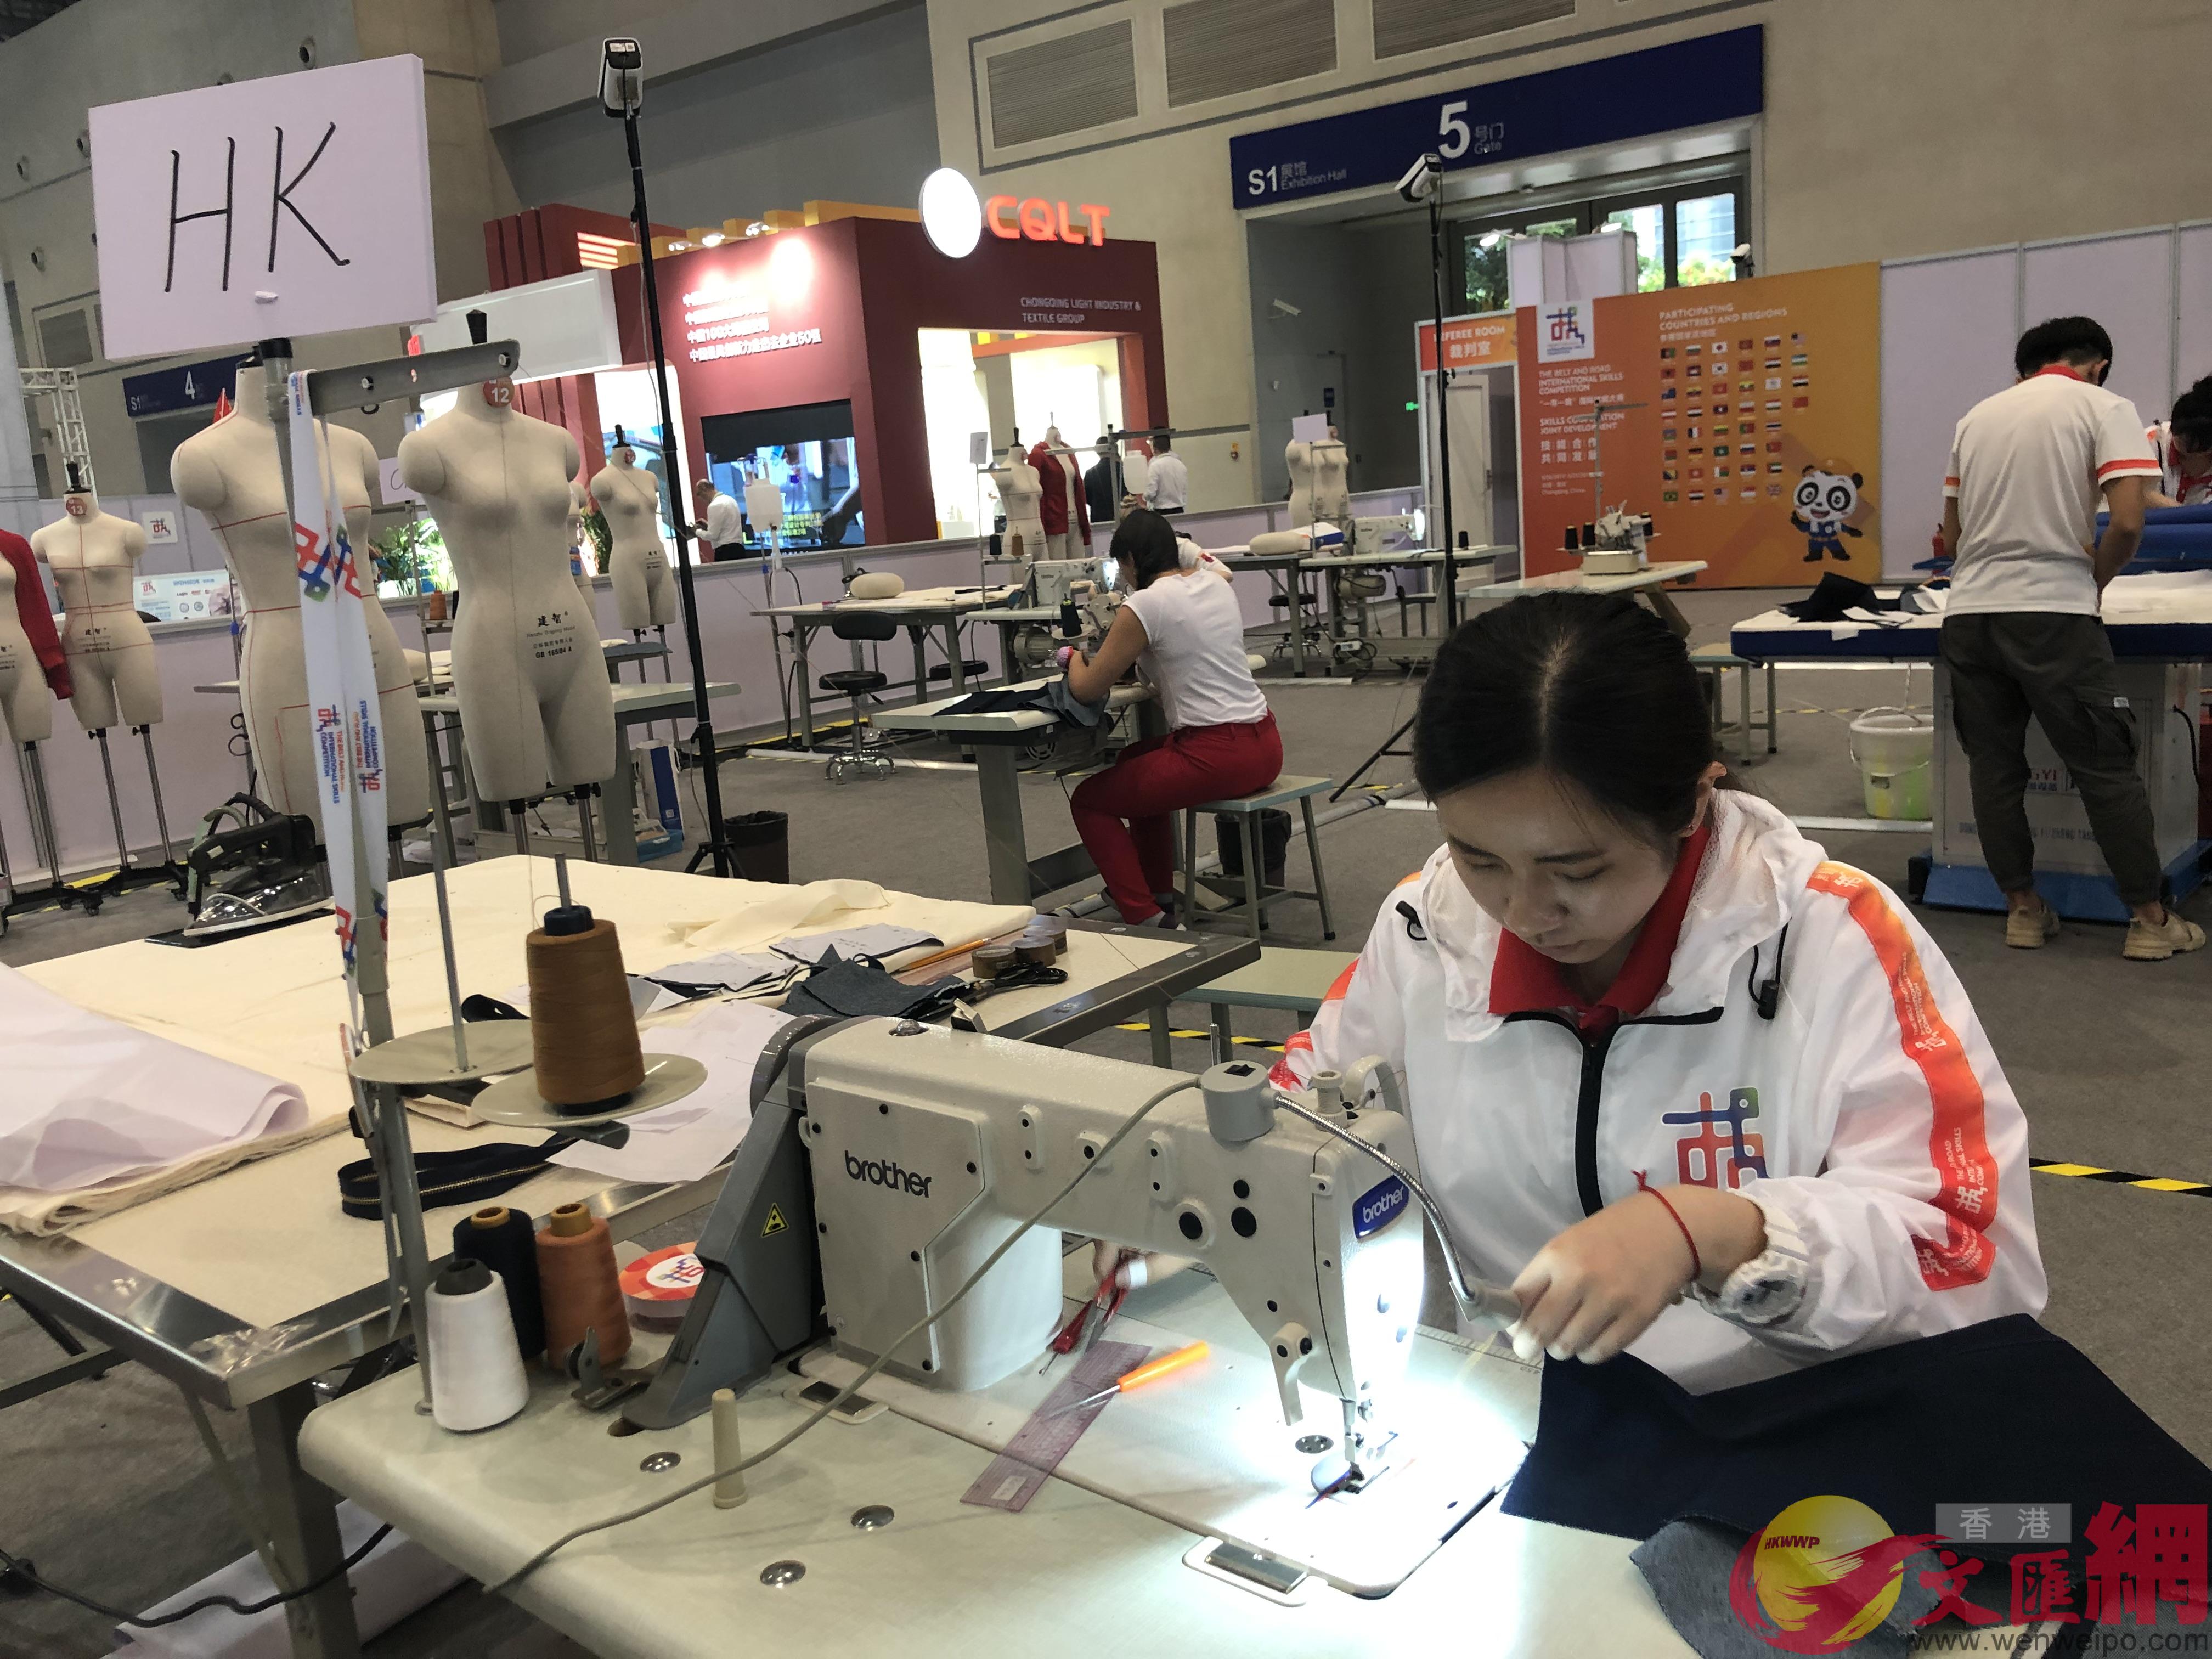 來自香港的選手Ng Pui Yu正在用縫紉機為衣料壓線]記者 張蕊 攝^